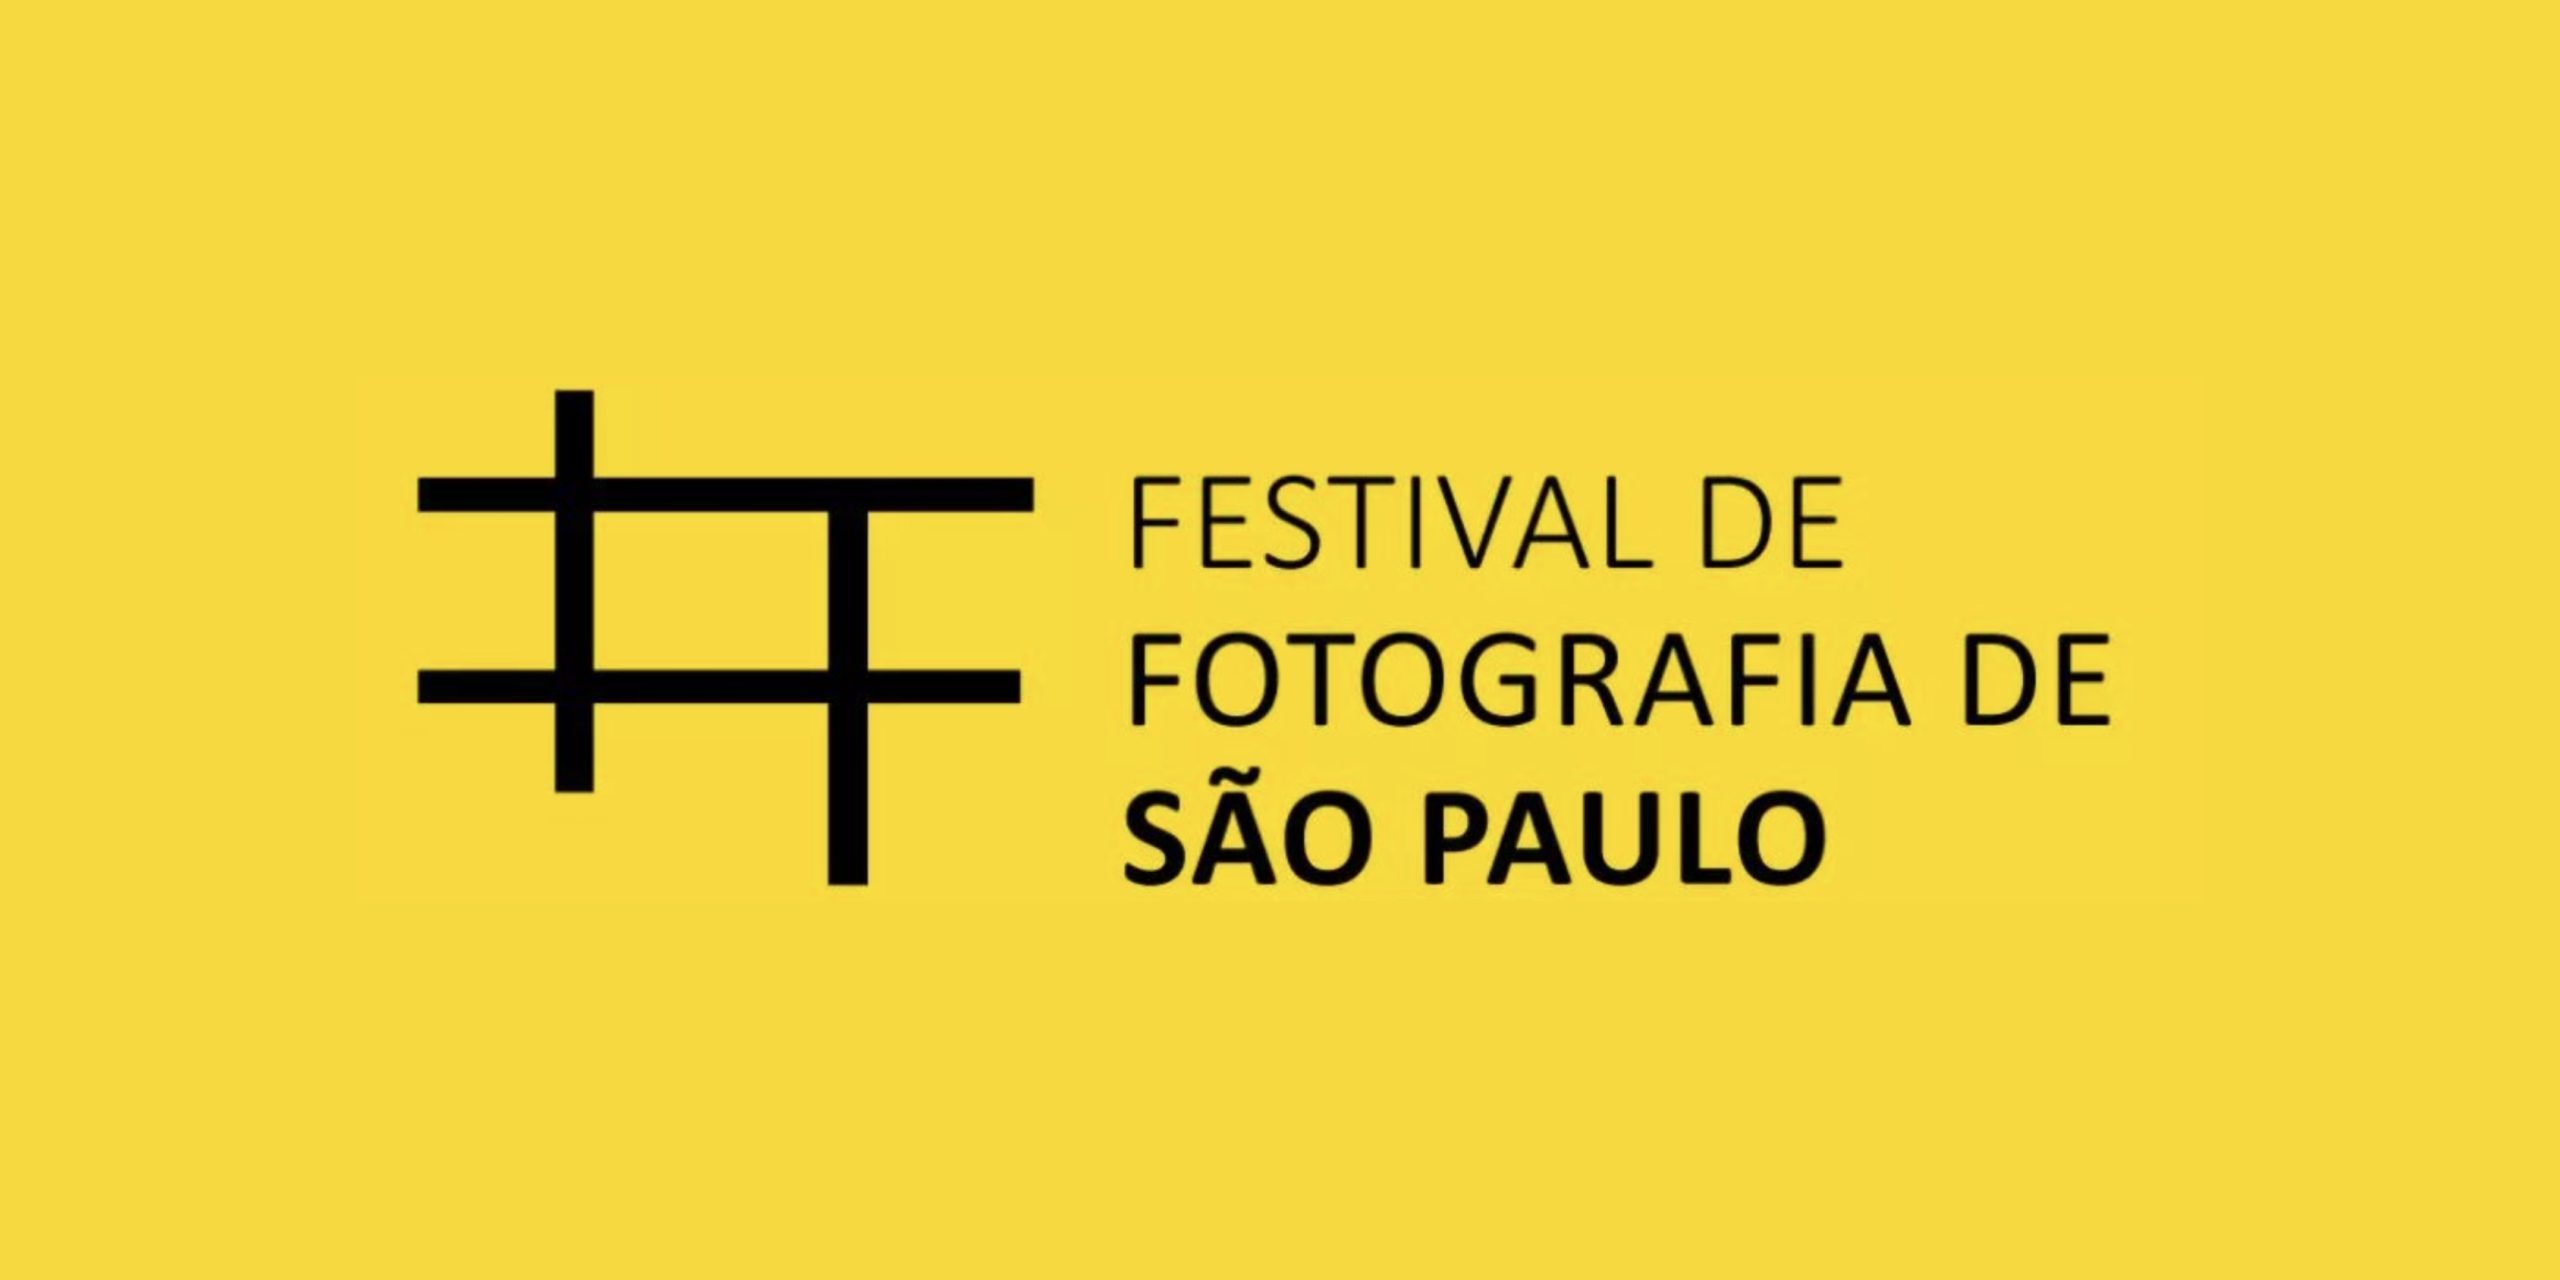 A ARFOC-SP faz parte da programação do Festival de Fotografia de São Paulo. Venha nos visitar neste final de semana!